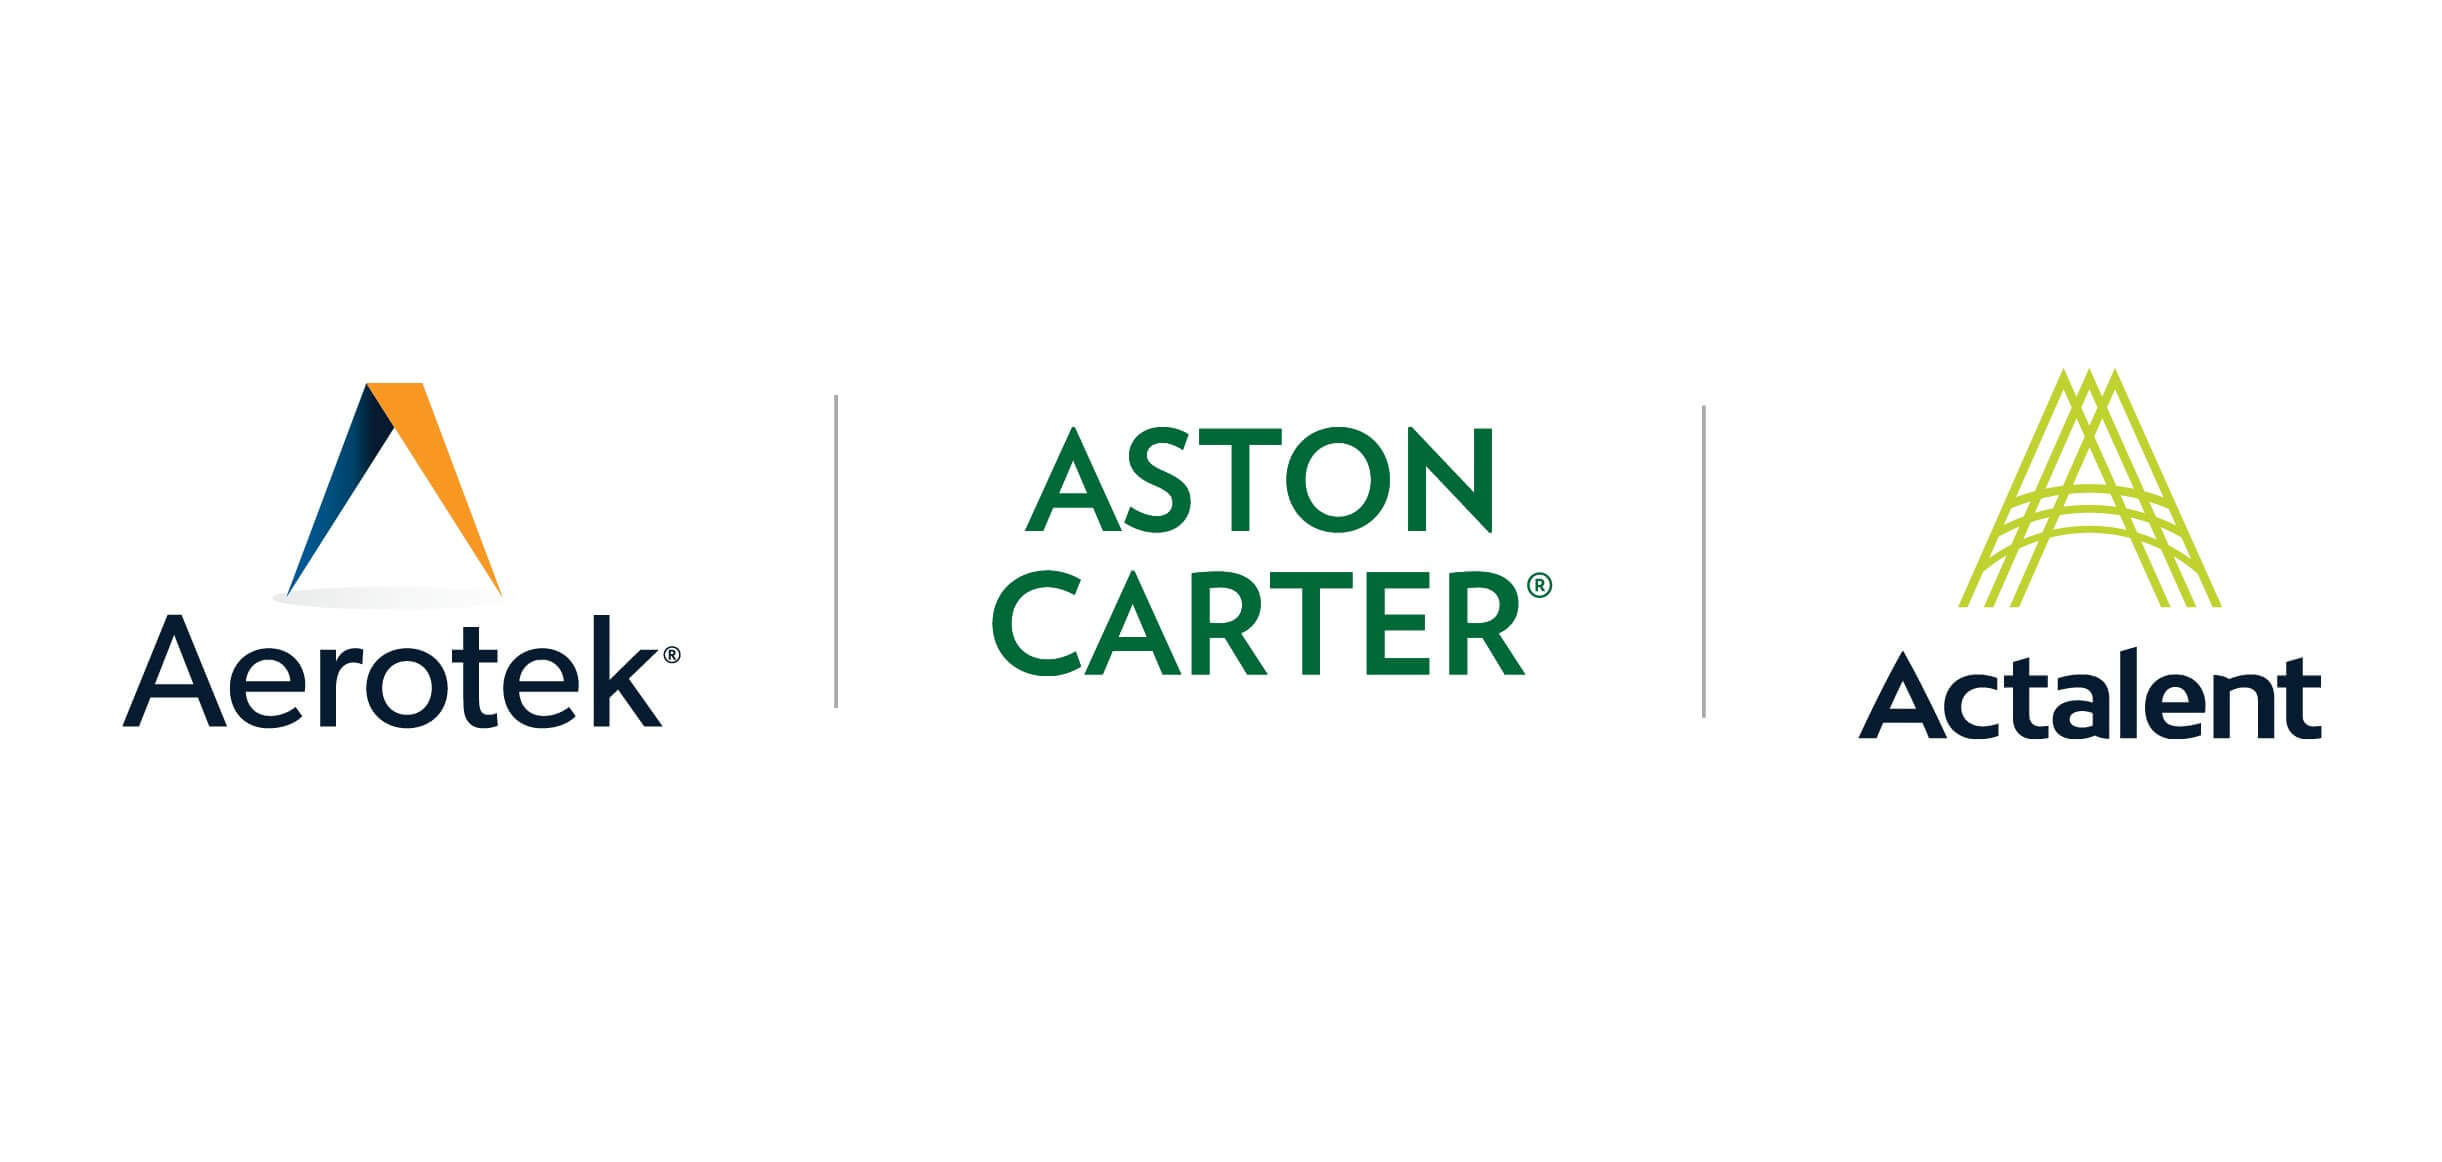 Aerotek, Aston Carter et la nouvelle marque Actalent s’alignent stratégiquement afin de fournir des solutions de talents personnalisées.